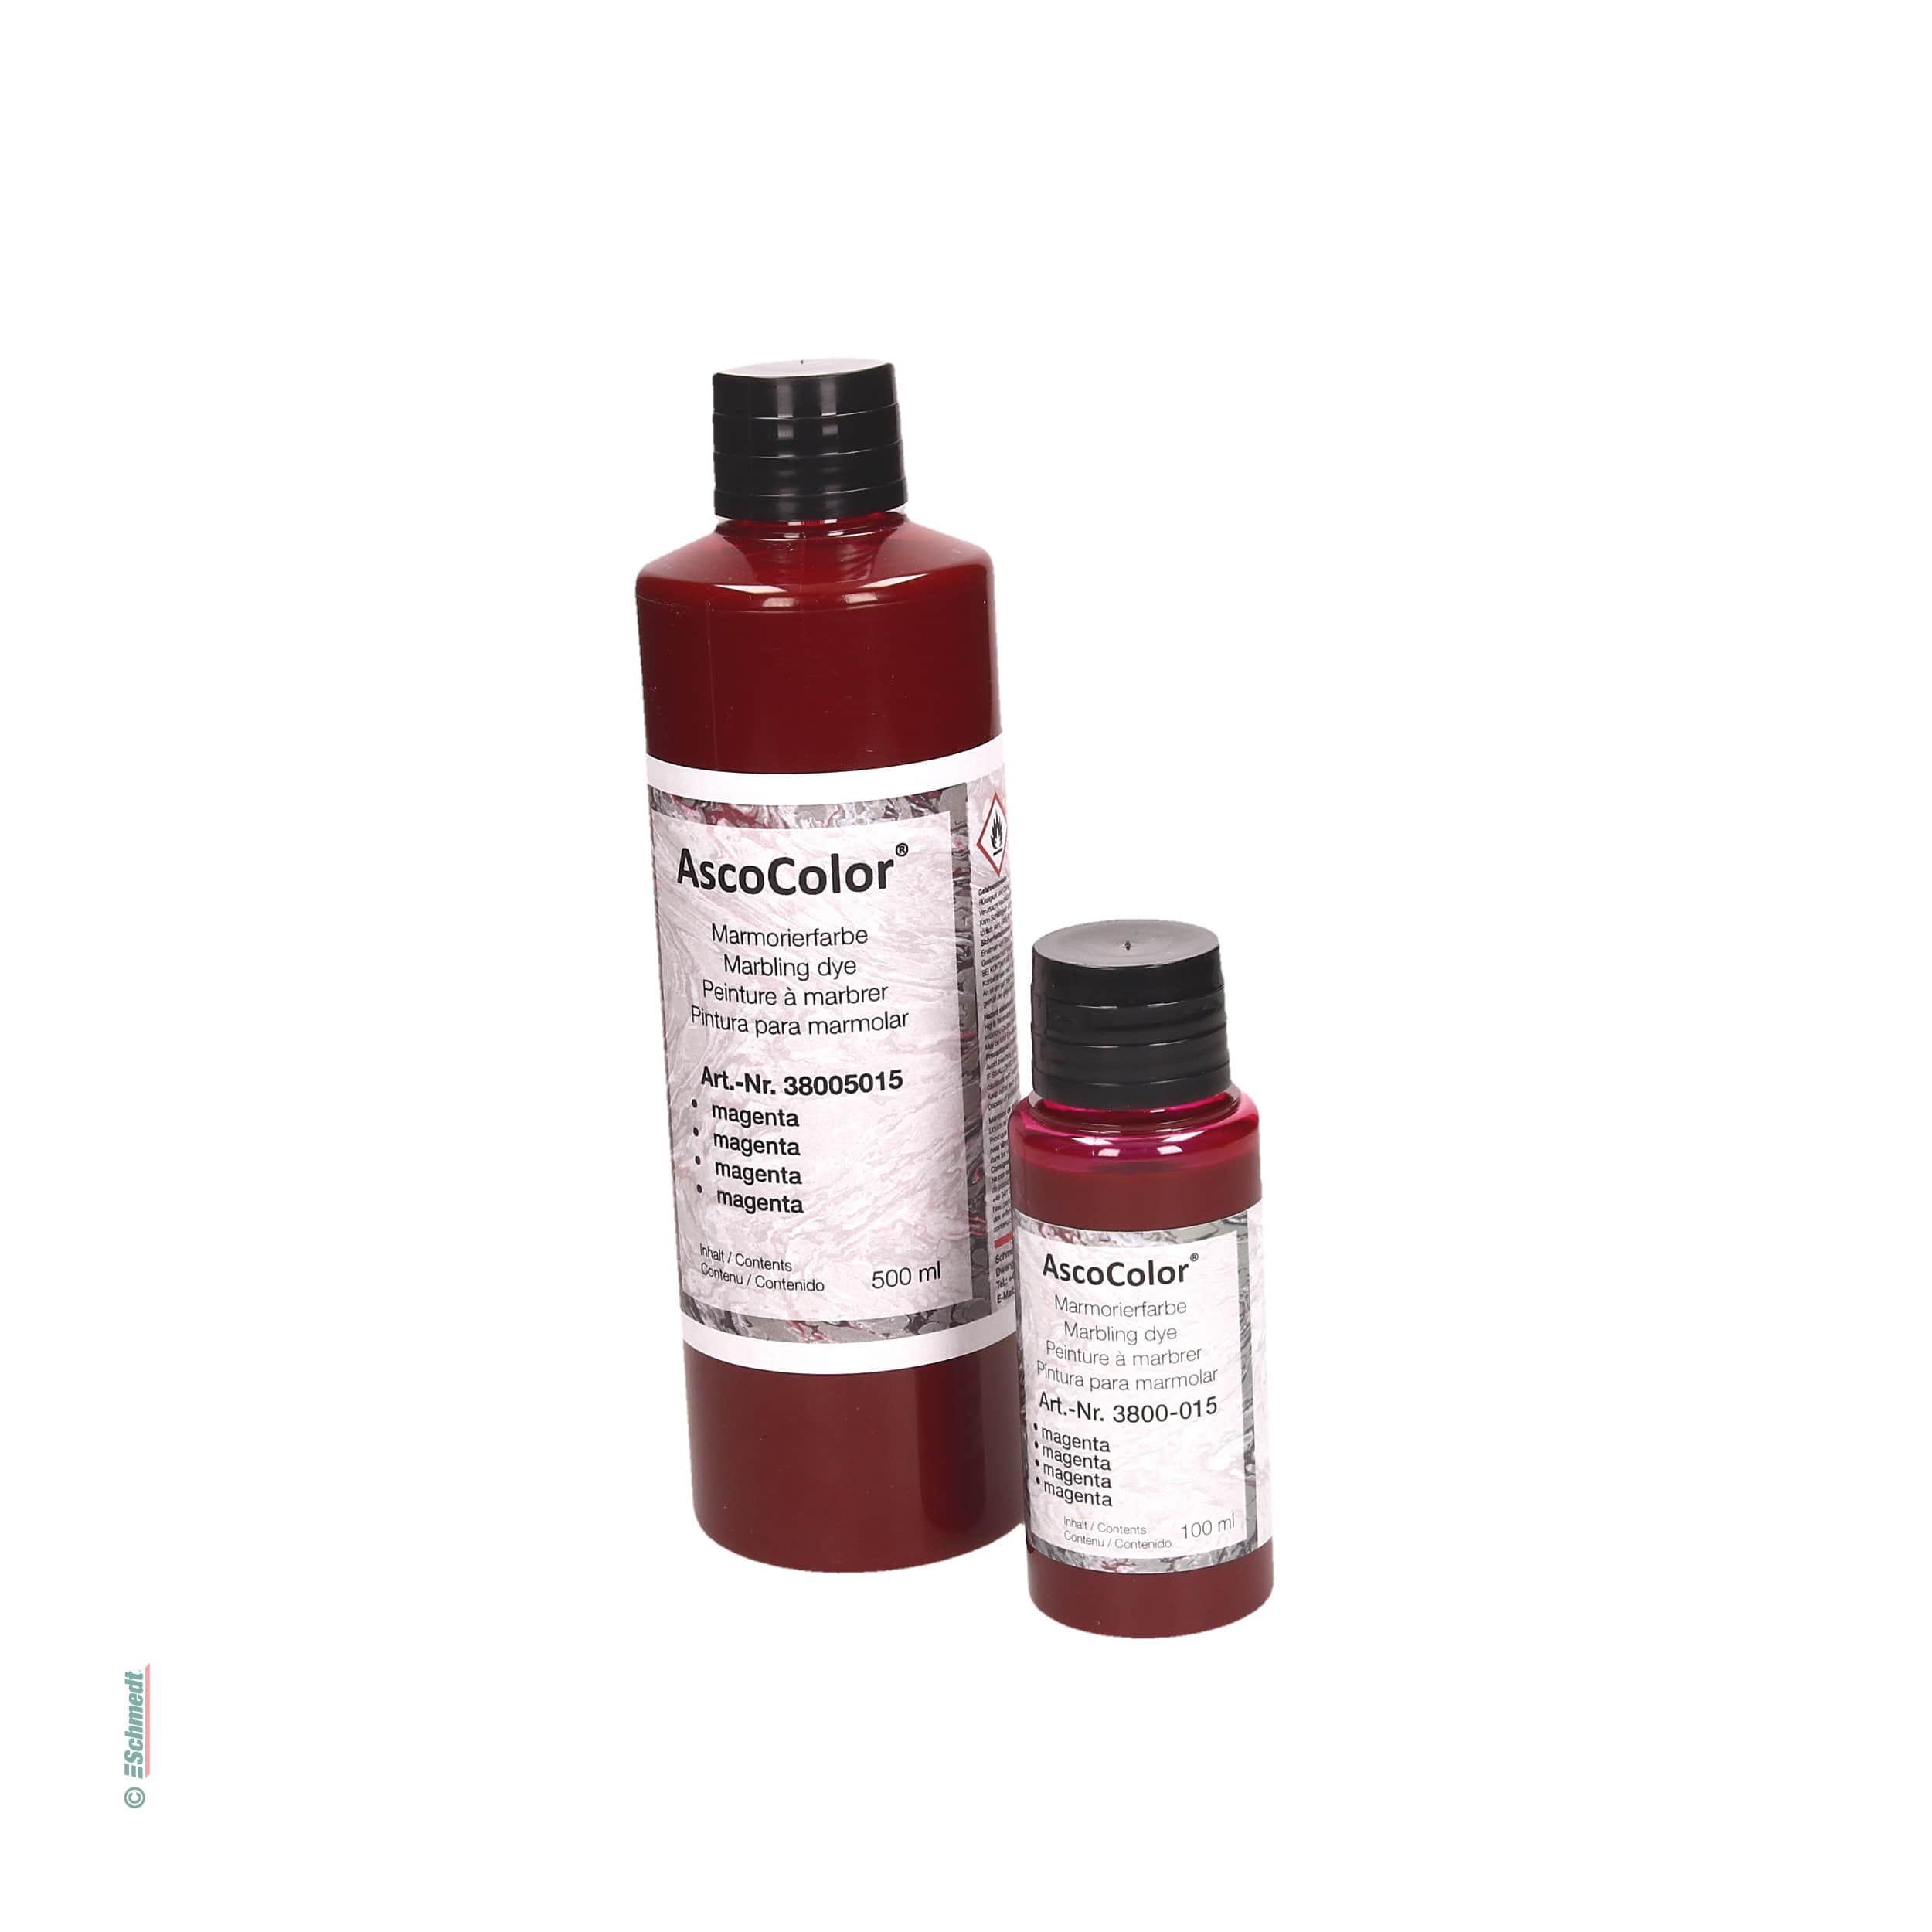 AscoColor® Marmorierfarbe - Farbe magenta - Gebindegröße Flasche / 500 ml - zur Herstellung marmorierter Papiere... - Bild-1